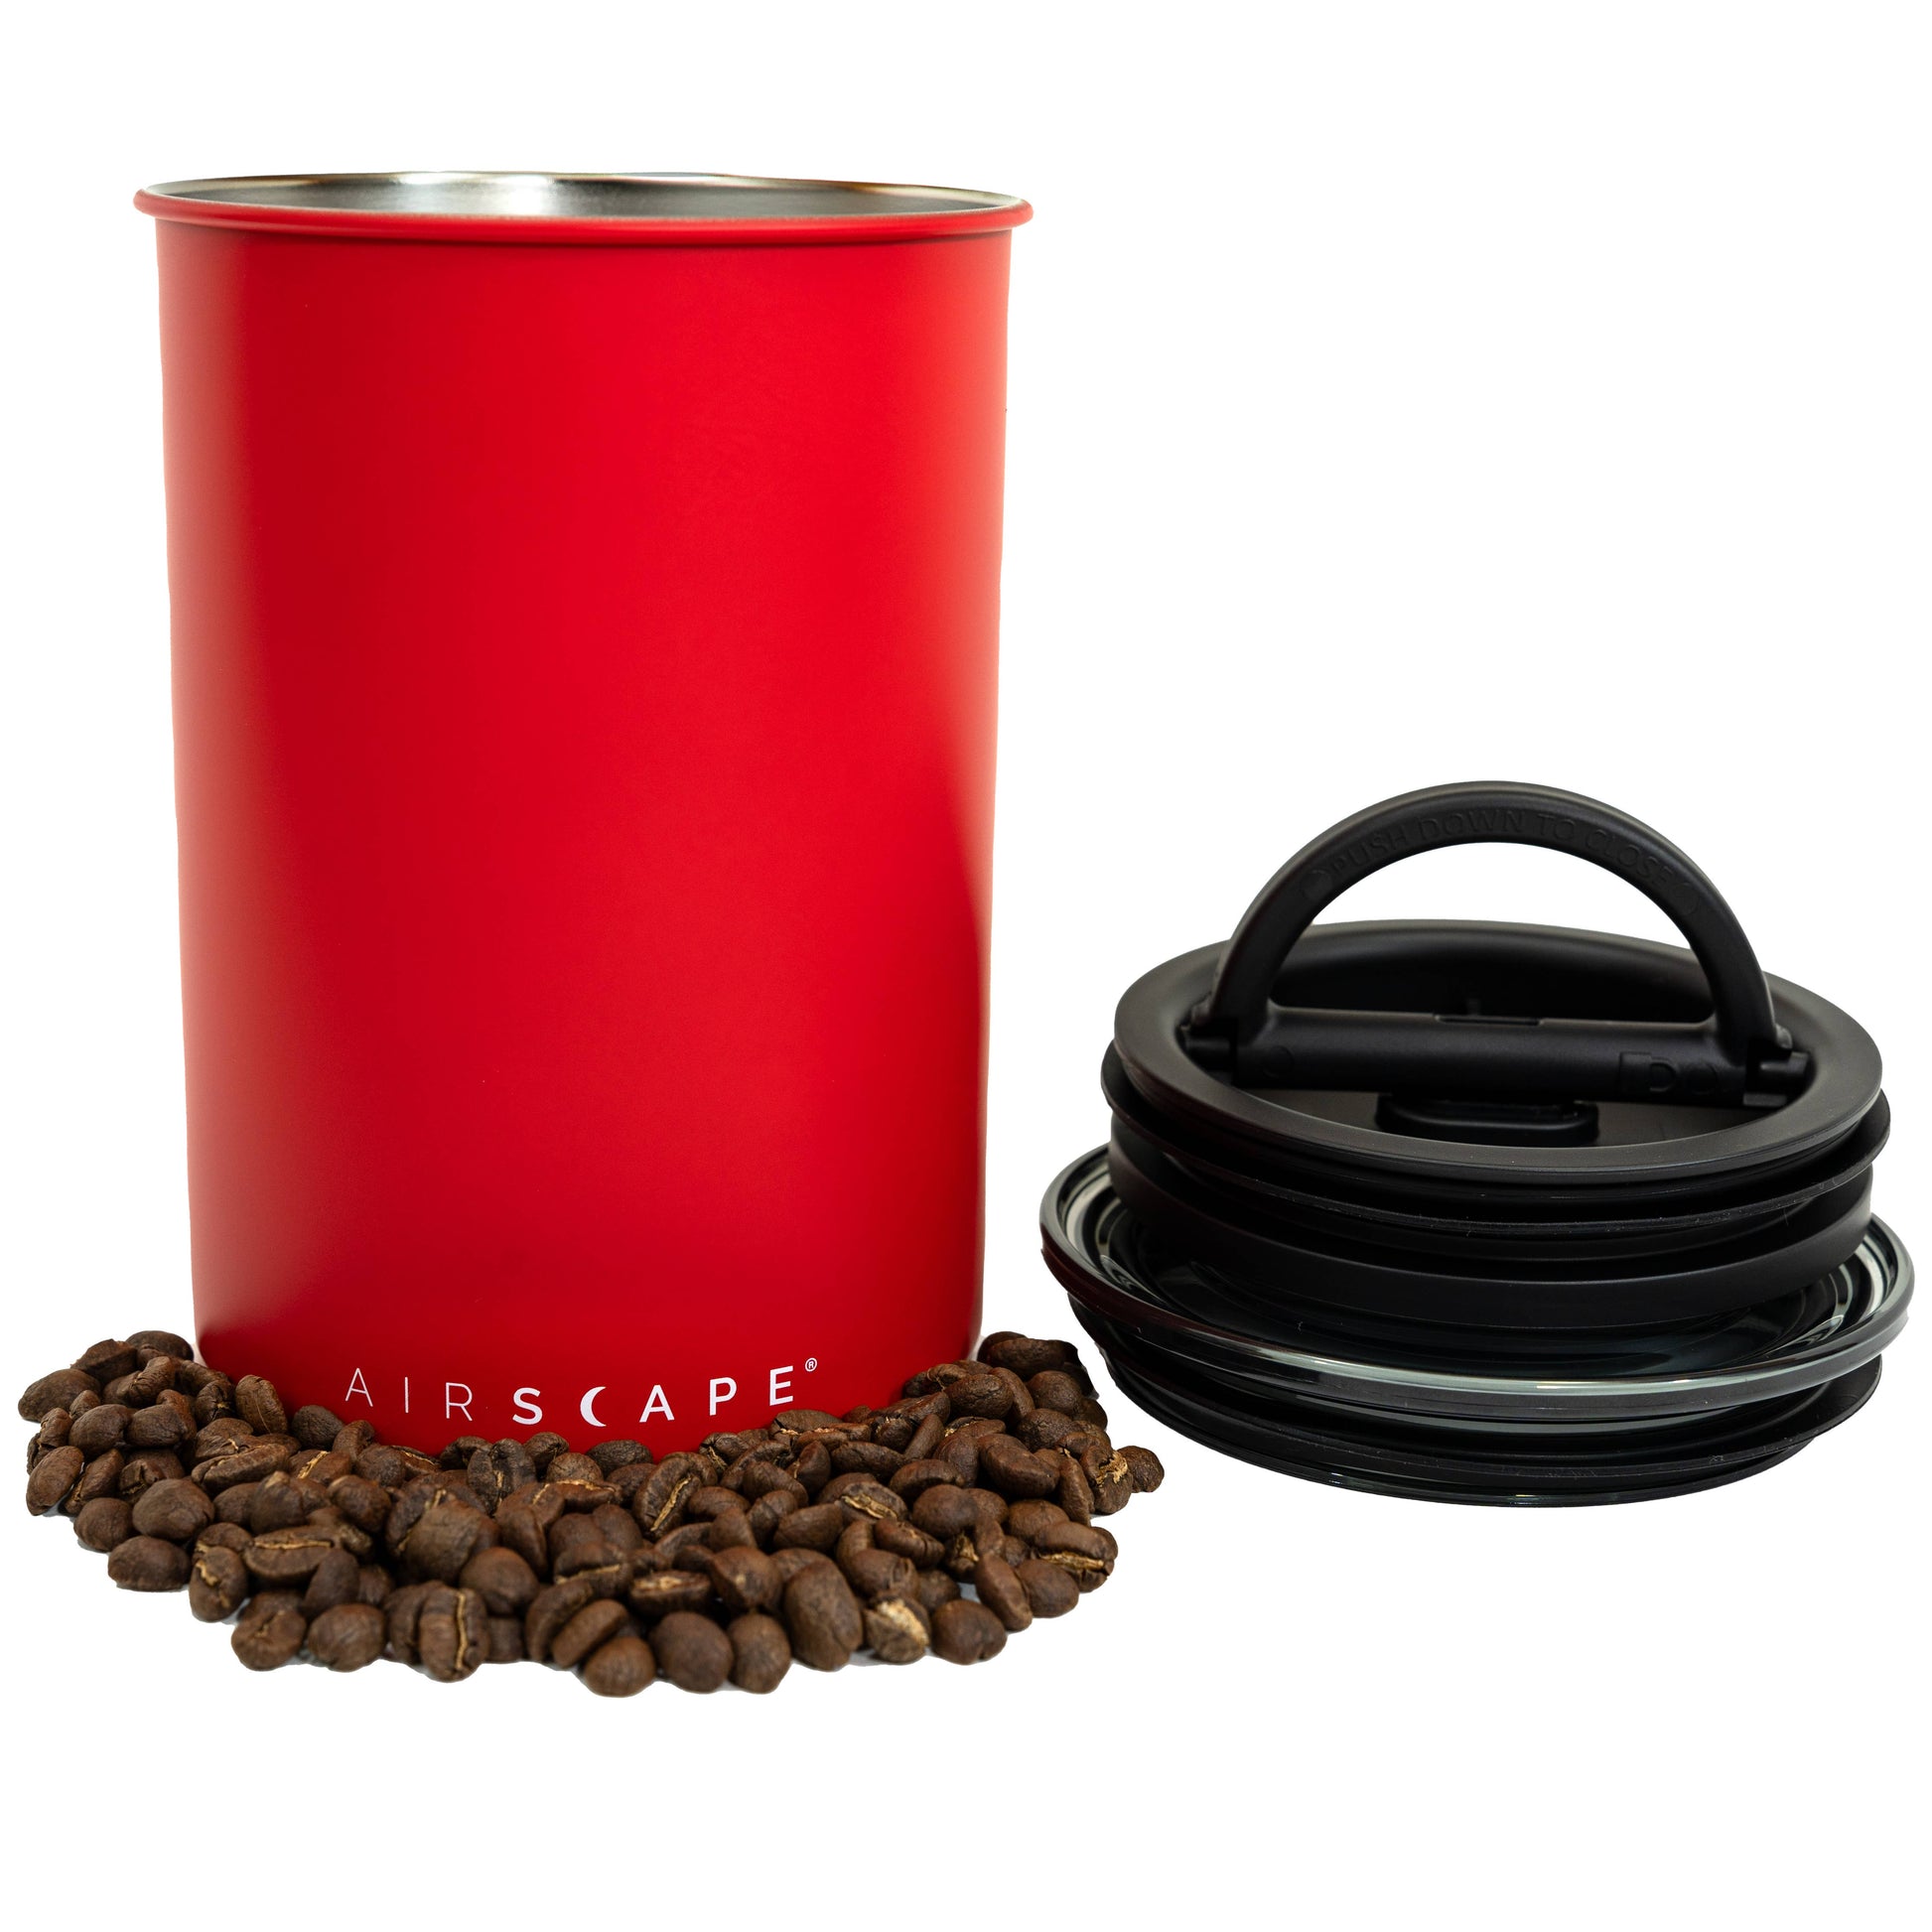 Boîte hermétique pour conserver le café Airscape 500g